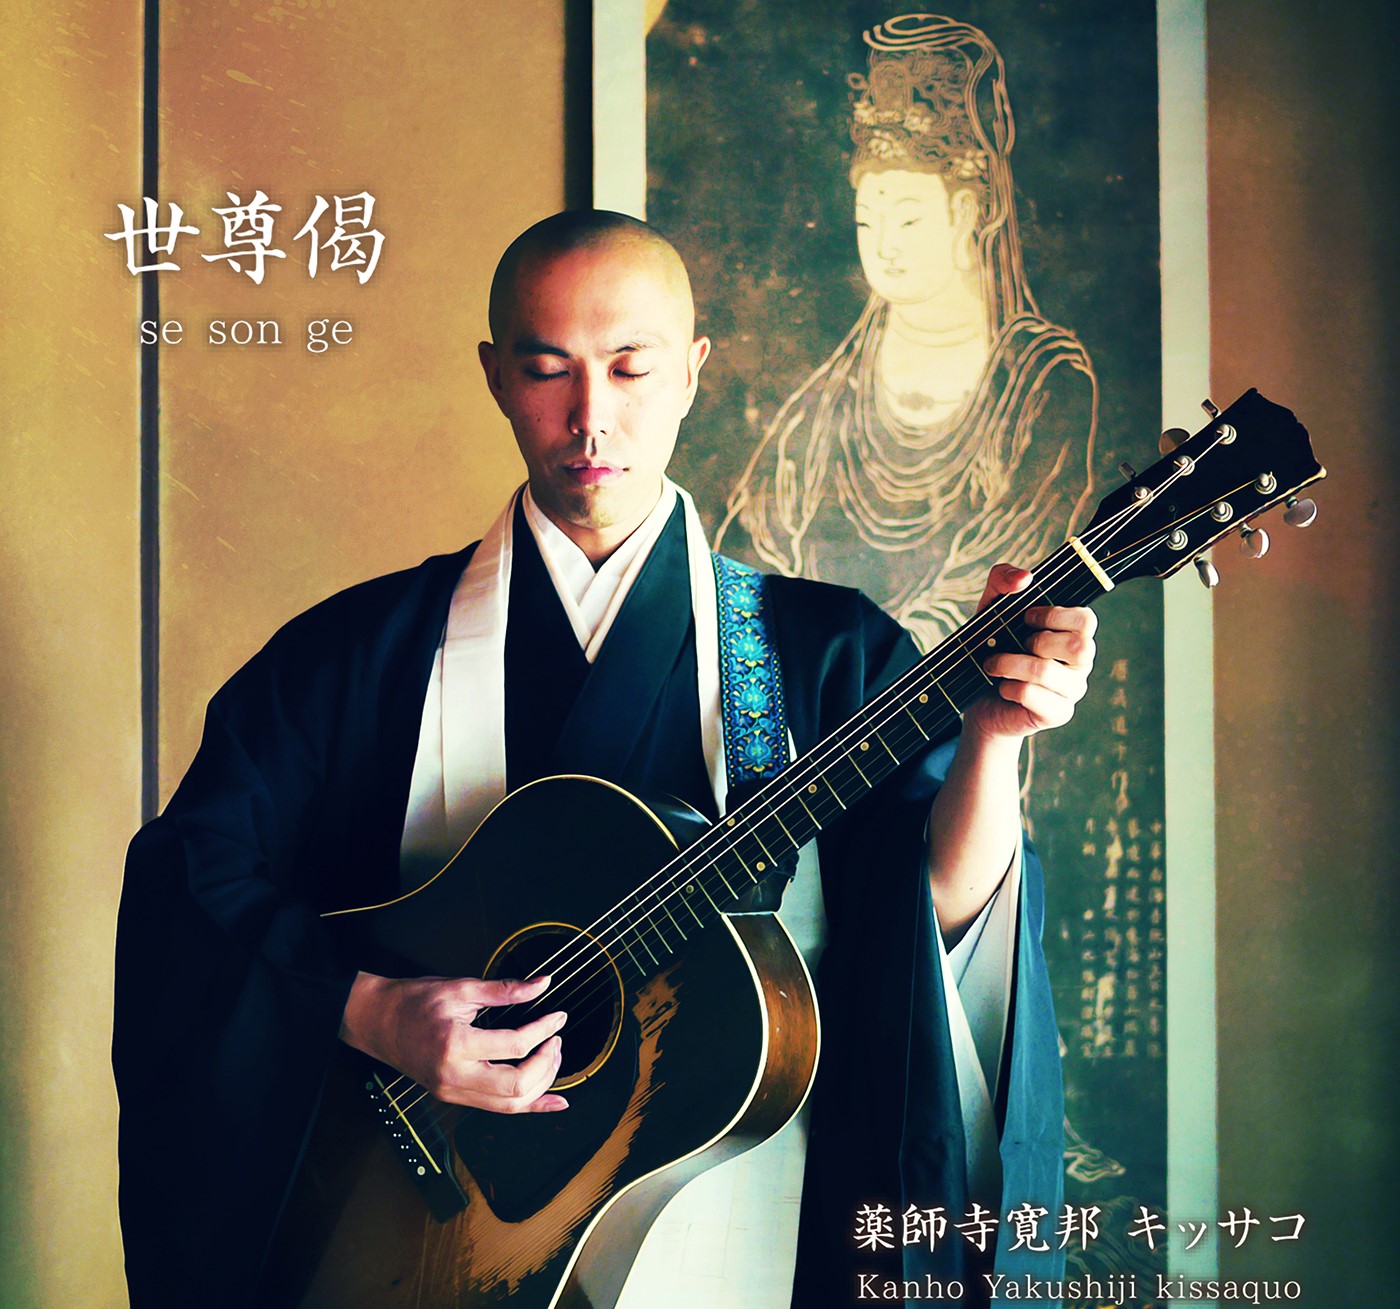 日本佛系音樂家藥師寺寬邦 除夕在台守歲演唱有望直播